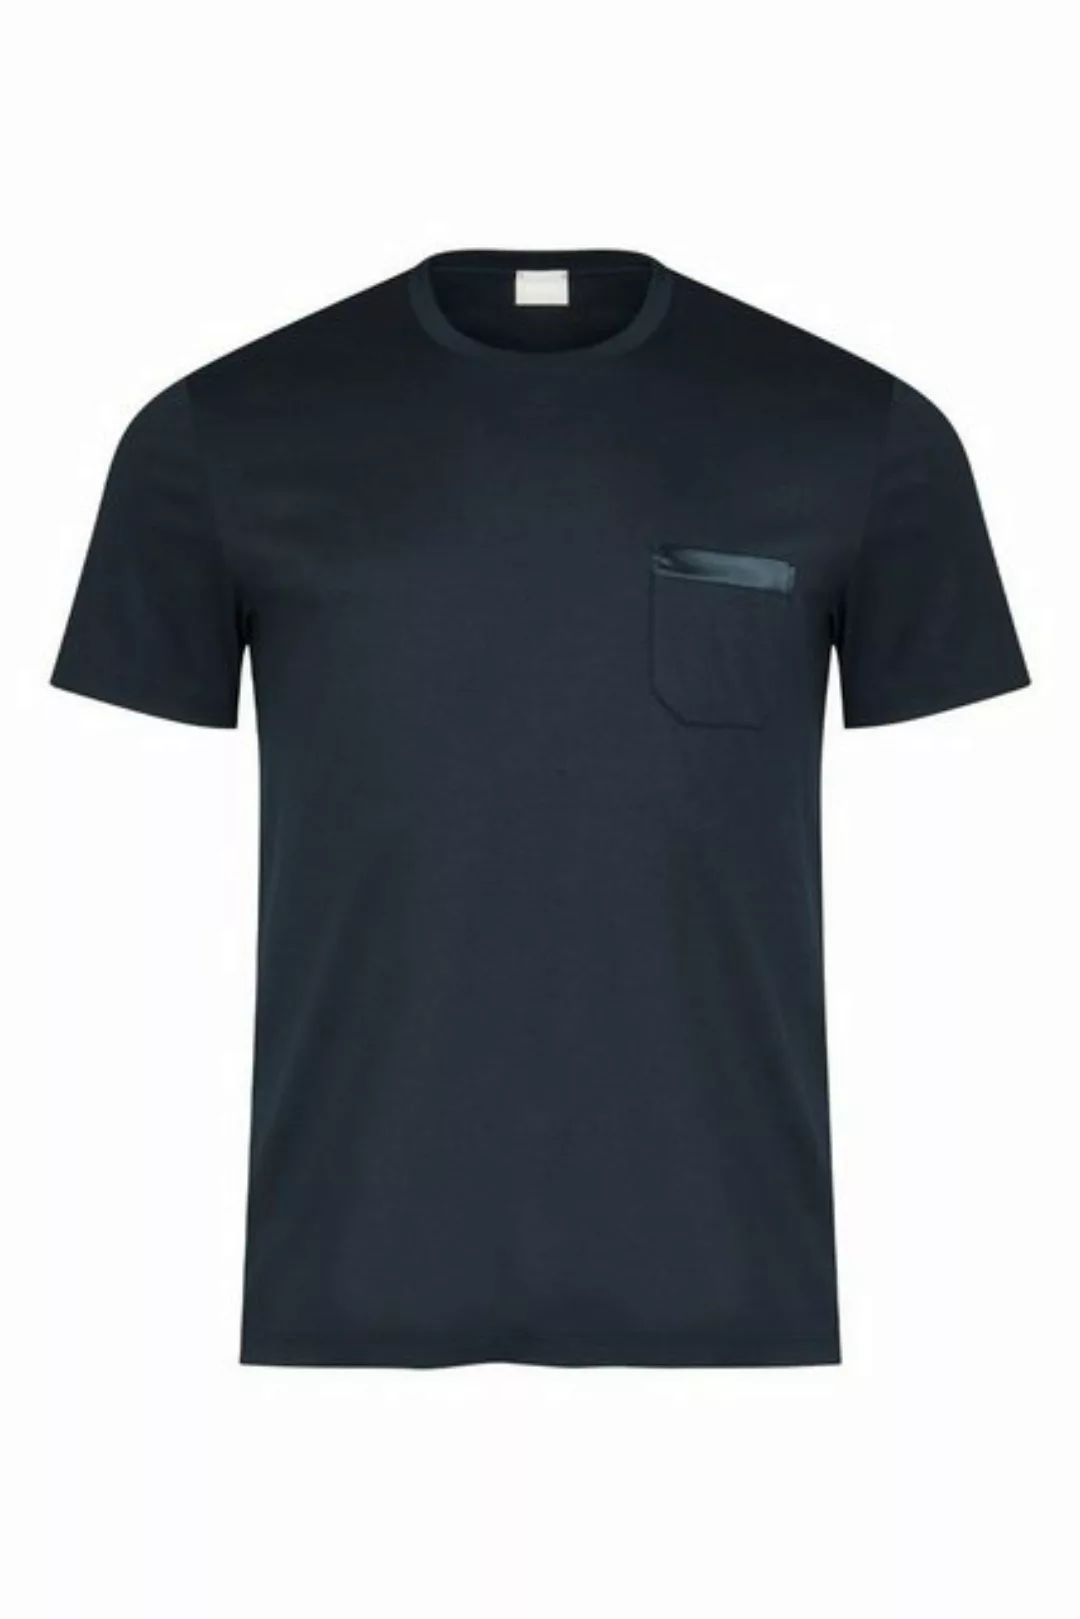 Mey AARHUS T-Shirt 30044/174 günstig online kaufen